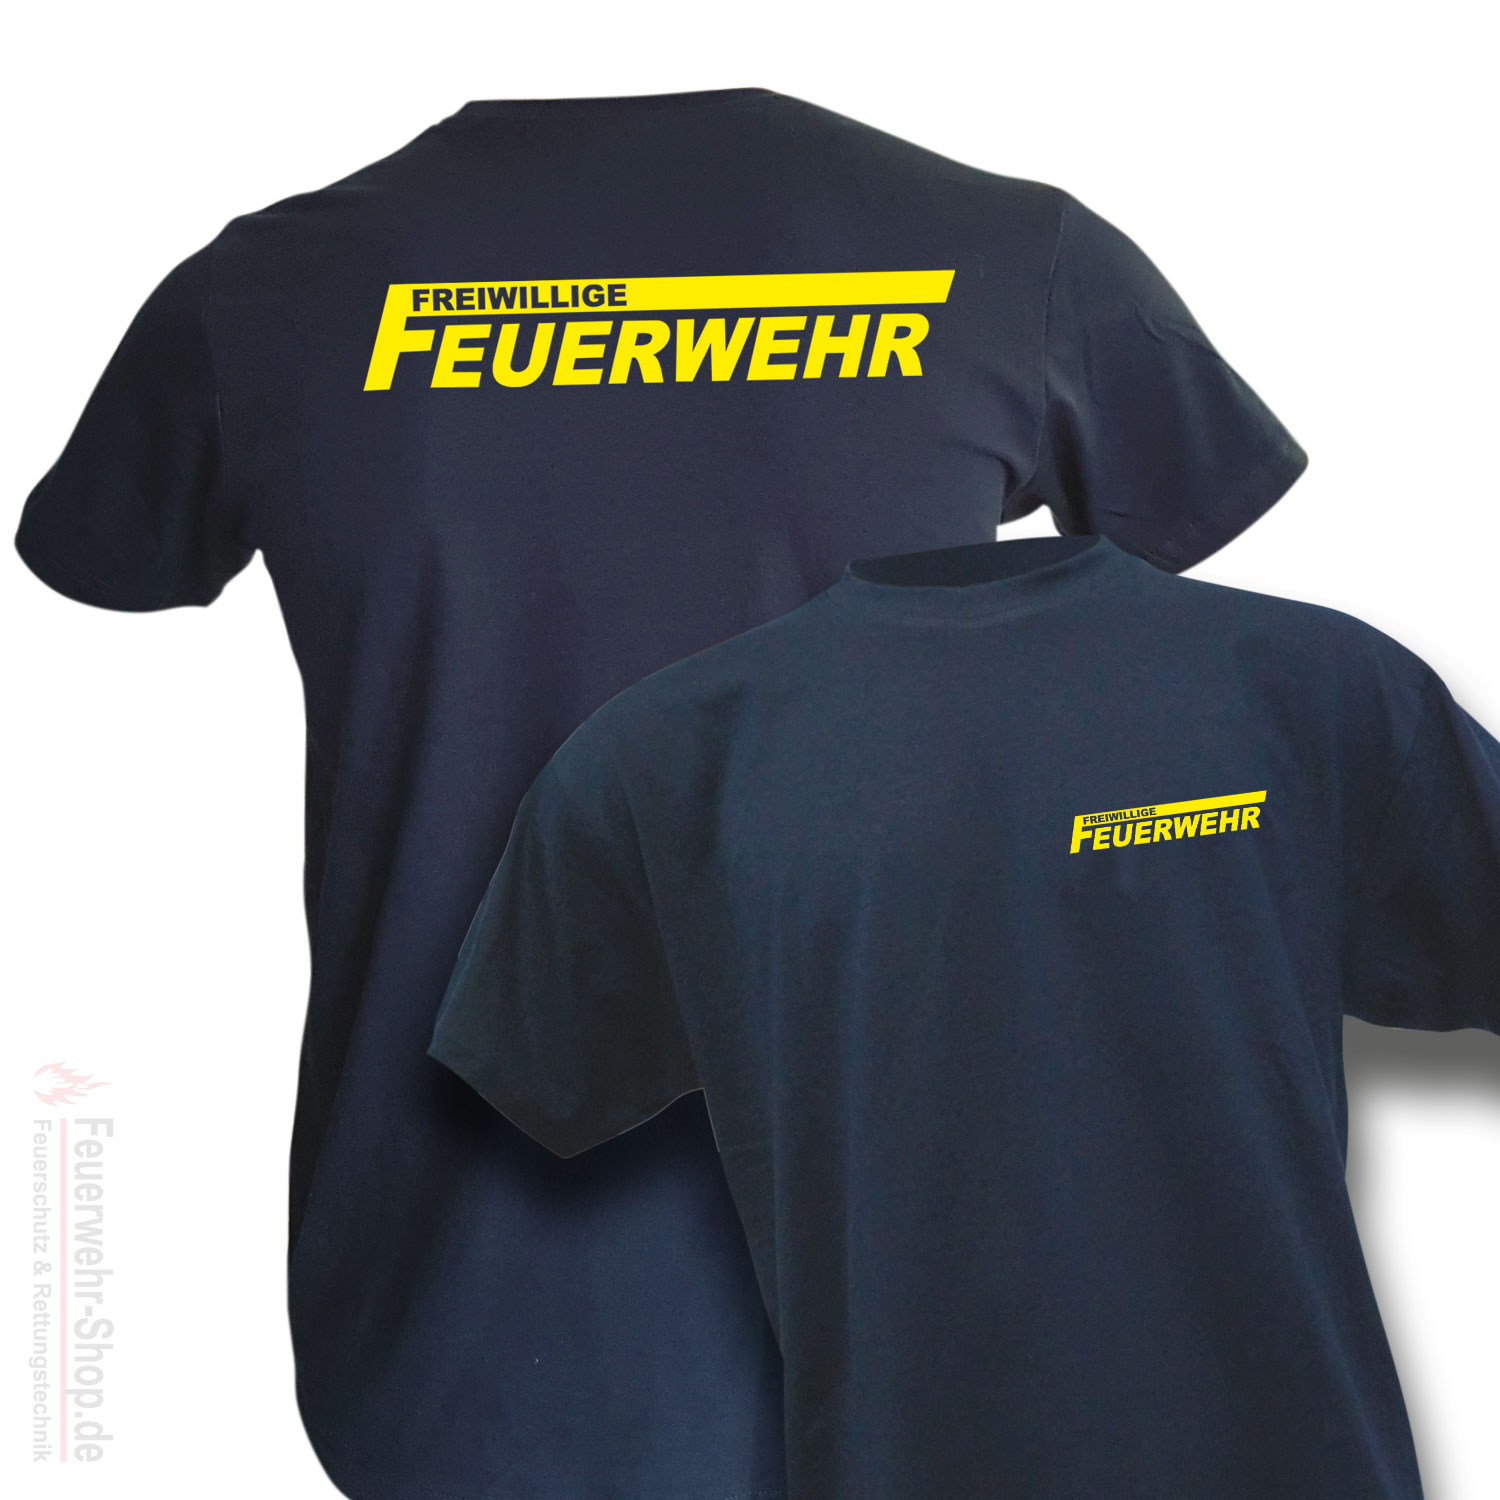 Freiwillige Feuerwehr T-Shirt Bekleidung Ausrüstung Logo Wunschname Sport FFW 43 